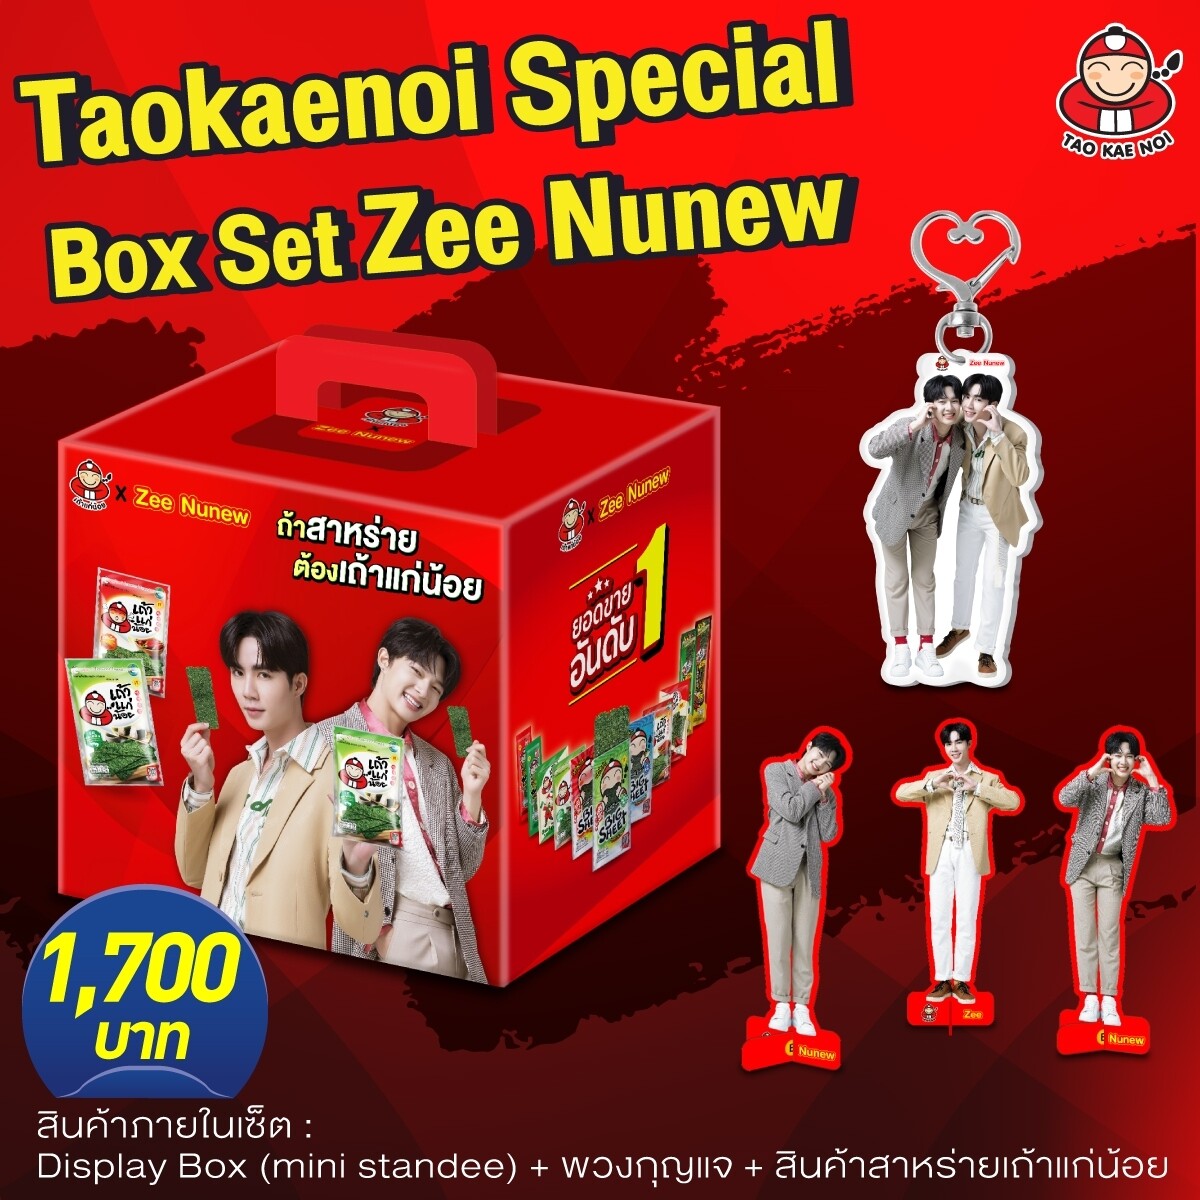 Taokaenoi Special Box Set Zee-Nunew ชุดสุดพิเศษ สาหร่ายเถ้าแก่น้อย ...